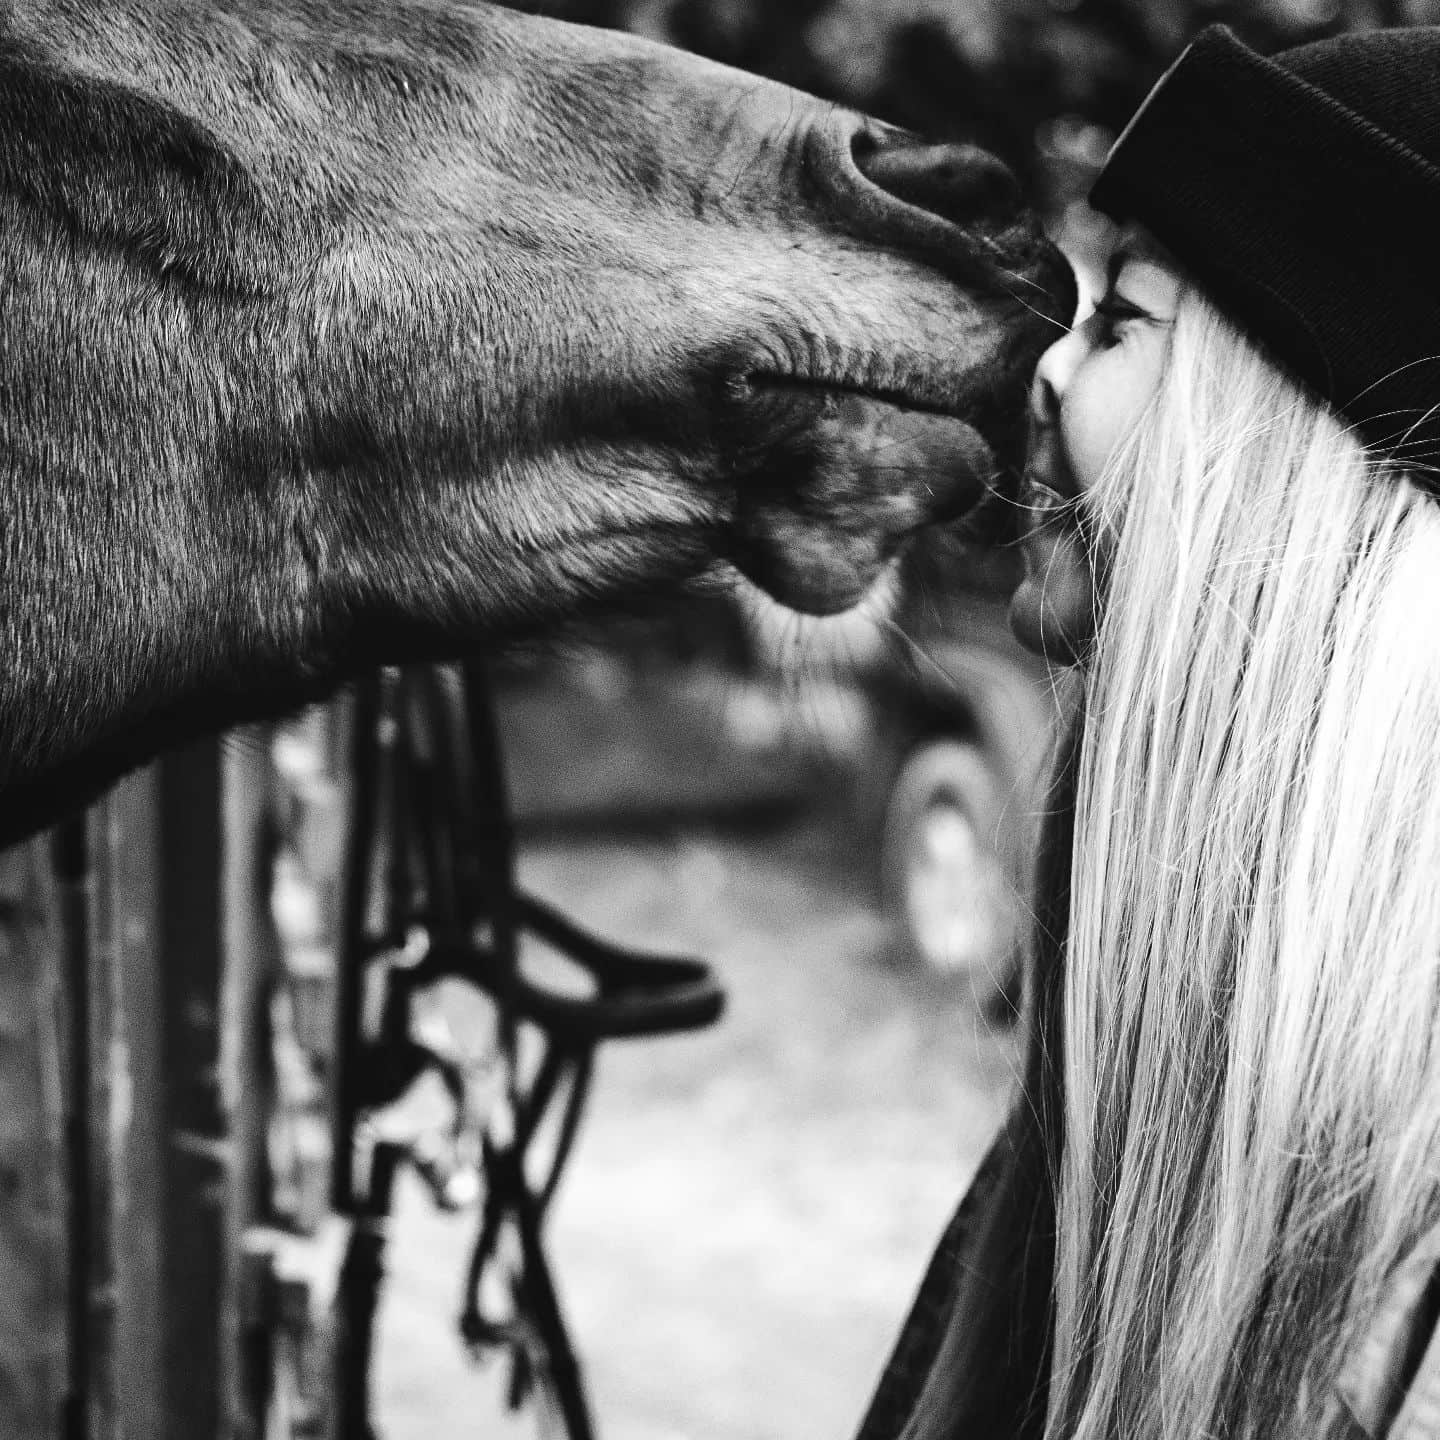 HÜHÜ
Kennt ihr das, wenn das Gegenüber nicht das richtige Timing beim Küssen hat? Manchmal ist die Liebe so groß, dass es stürmisch wird! ❤️ Ich sag's euch, Love has no lables!
Heute schon jemanden geküsst?

#friendshipgoals 
#friendship 
#portraitoftheday 
#horse 
#horselove 
#dasglückdiesererdeliegtaufdemrückenderpferde
#reiten
#hühhh 
#natur 
#embraceeverydayjoyfully 
#portraitfotografie 
#headshoot 
#beautiful 
#portaitvision
#discoverportrait 
#portraitphotography 
#portraitsession 
#discoverportraits 
#portraits_universe 
#theportraitcentral 
#top_portraits 
#dresden 
#portraitstream 
#portraitoftheday 
#portraitmood 
#tierfotografie 
#pferdeglück
#freundschaftsfoto
#horses
#tierfotografie
#franziskakestelfotografie 
#dresdengram